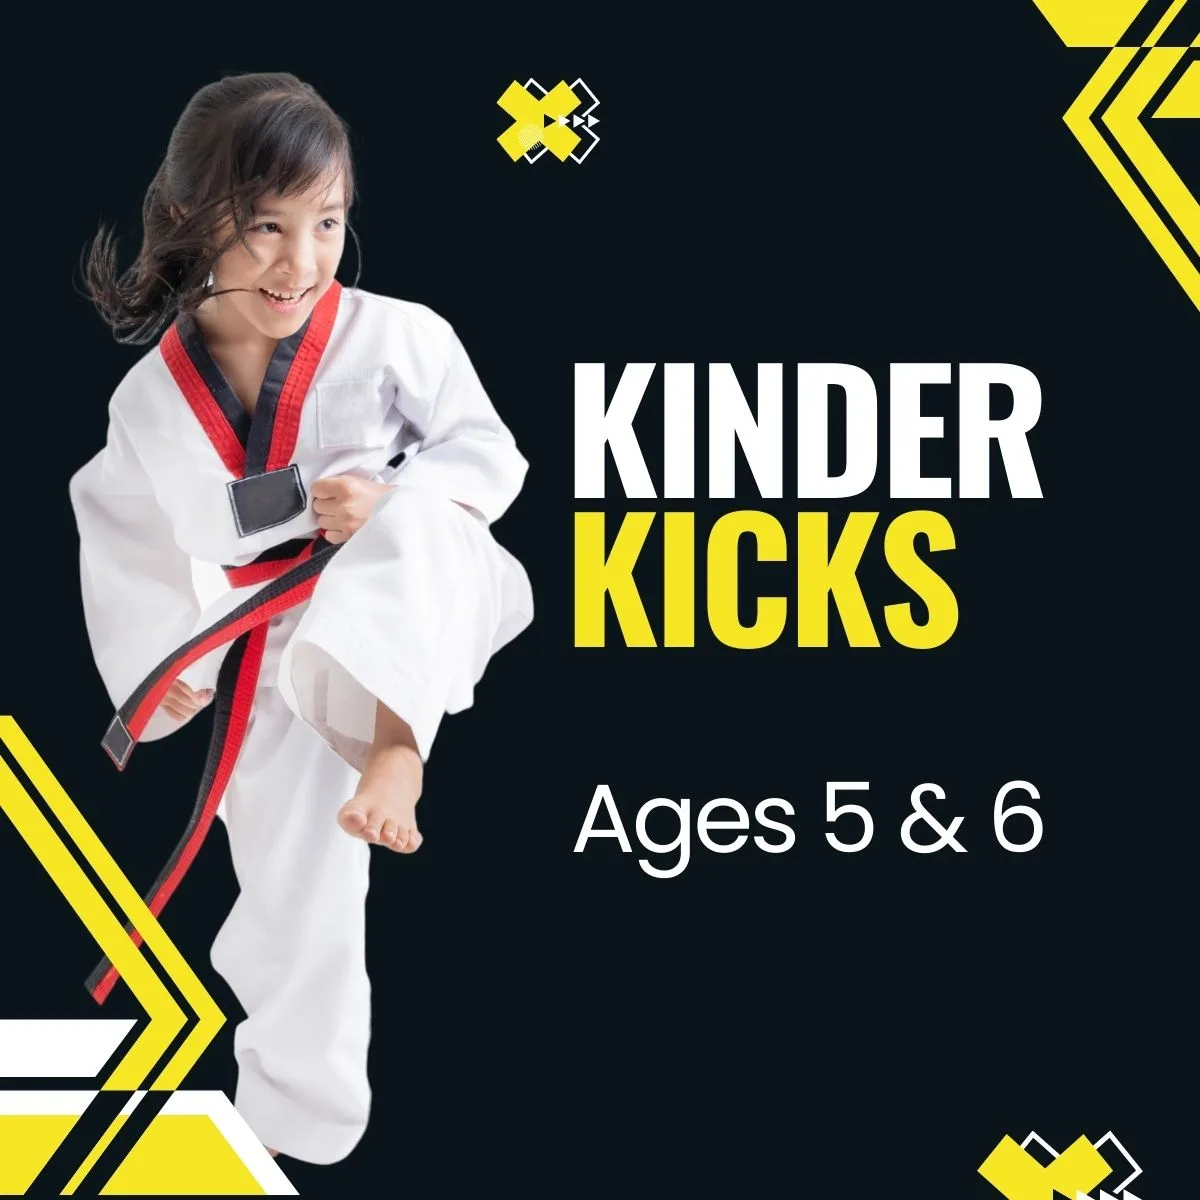 Program - Kinder Kicks ages 5 and 6